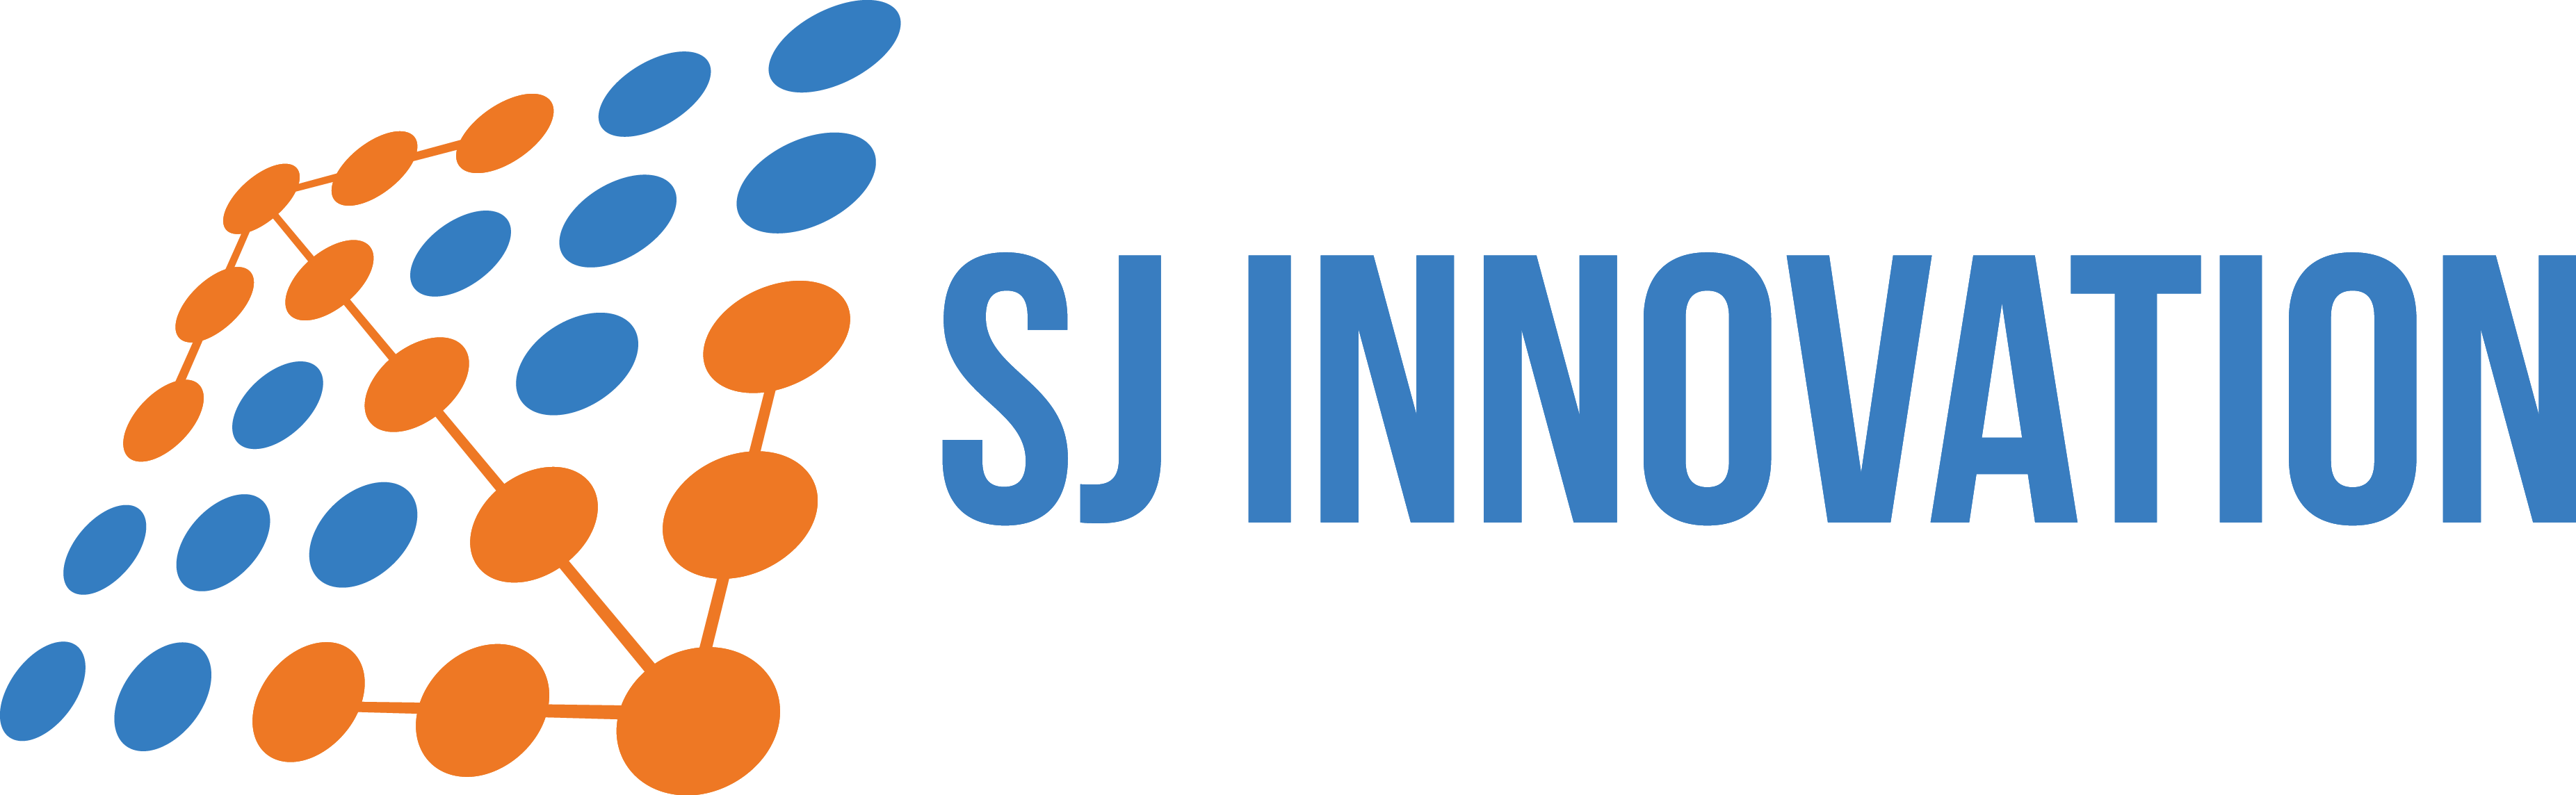 SJ Innovation LLC